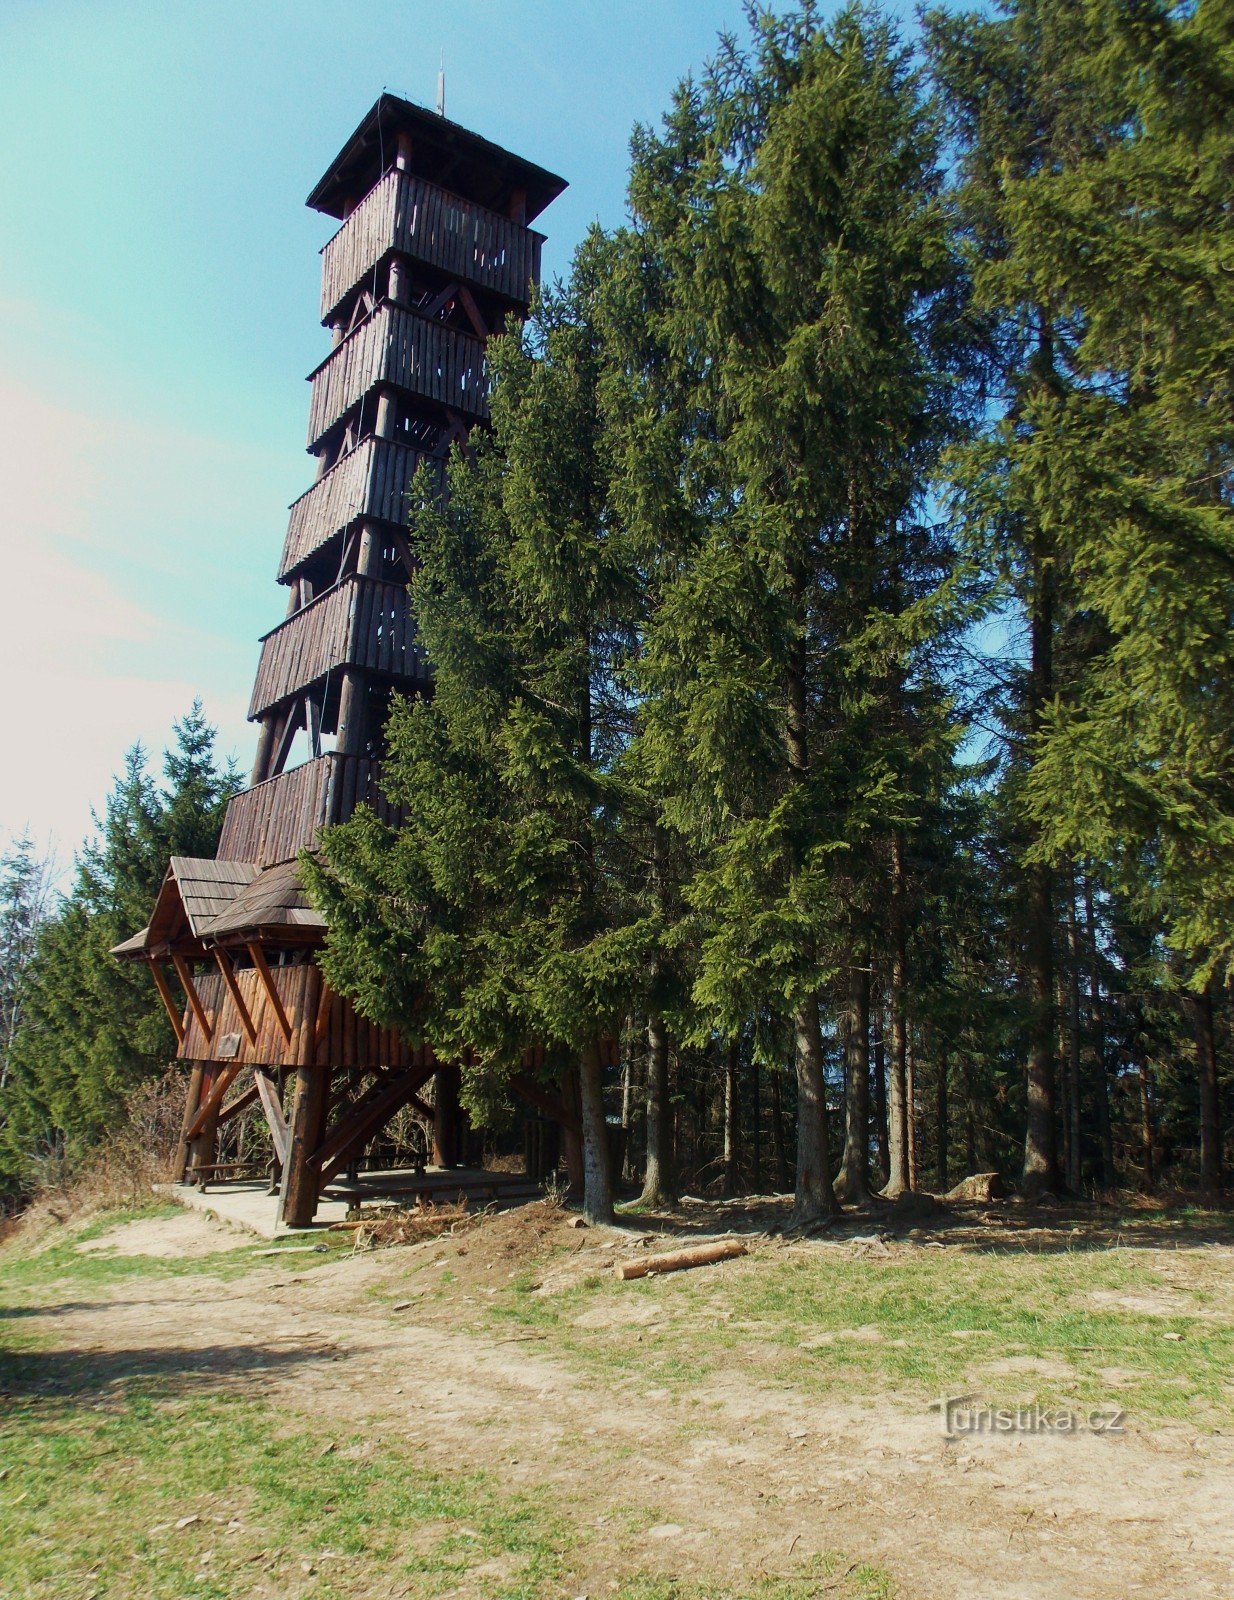 Lentewandeling naar de uitkijktoren op de Královec-heuvel